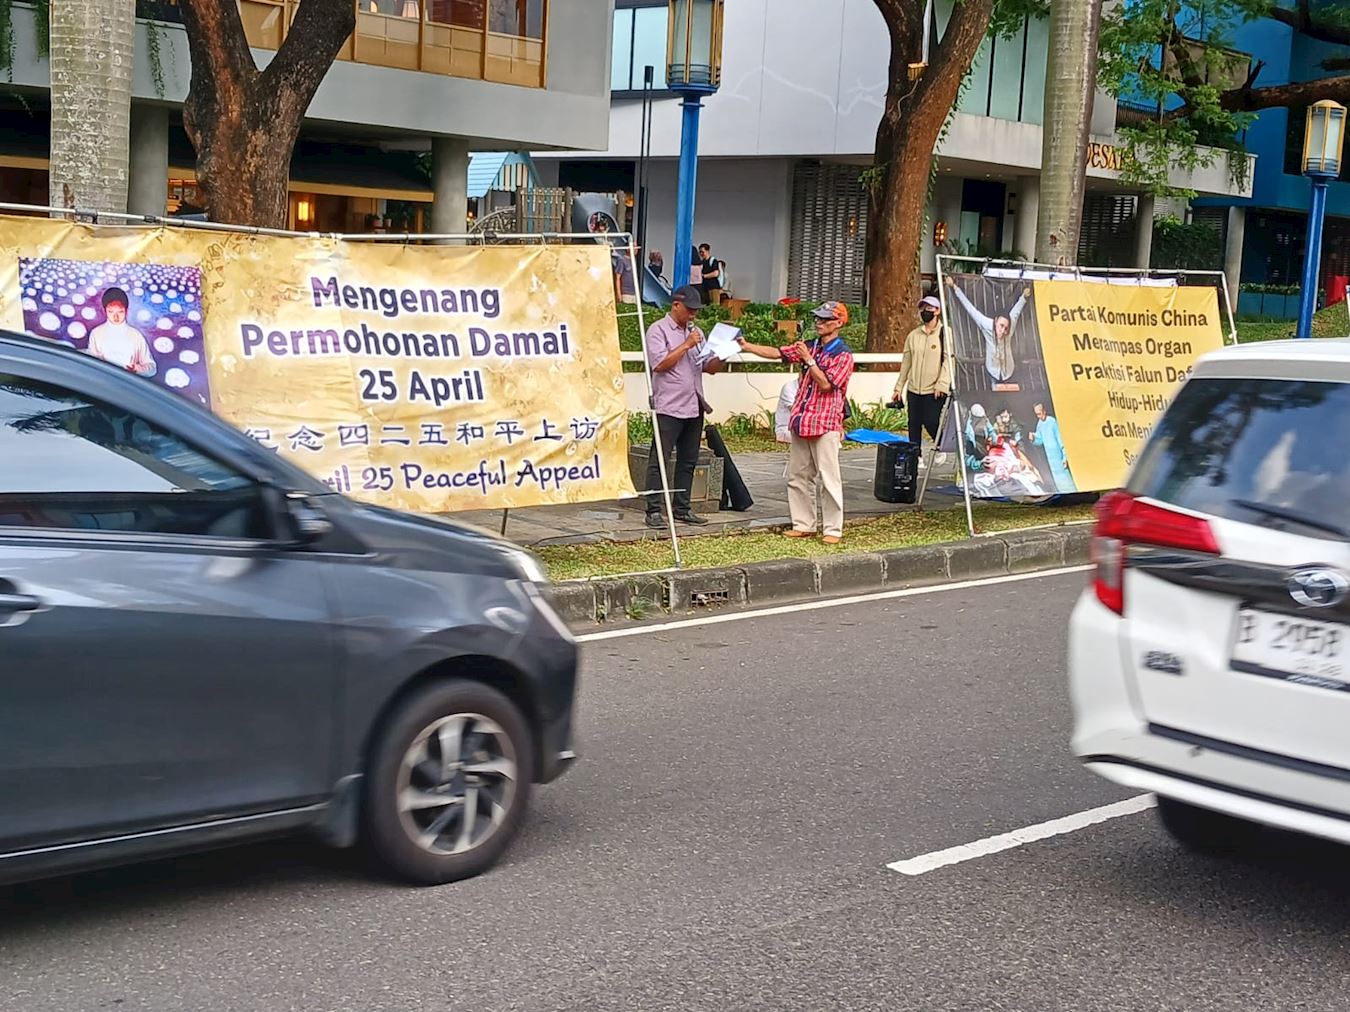 '图1：二零二四年四月二十日，为纪念四·二五和平理性上访25周年，法轮功学员在印尼雅加达（Jakarta）的中国驻印尼大使馆前举办和平请愿活动。'